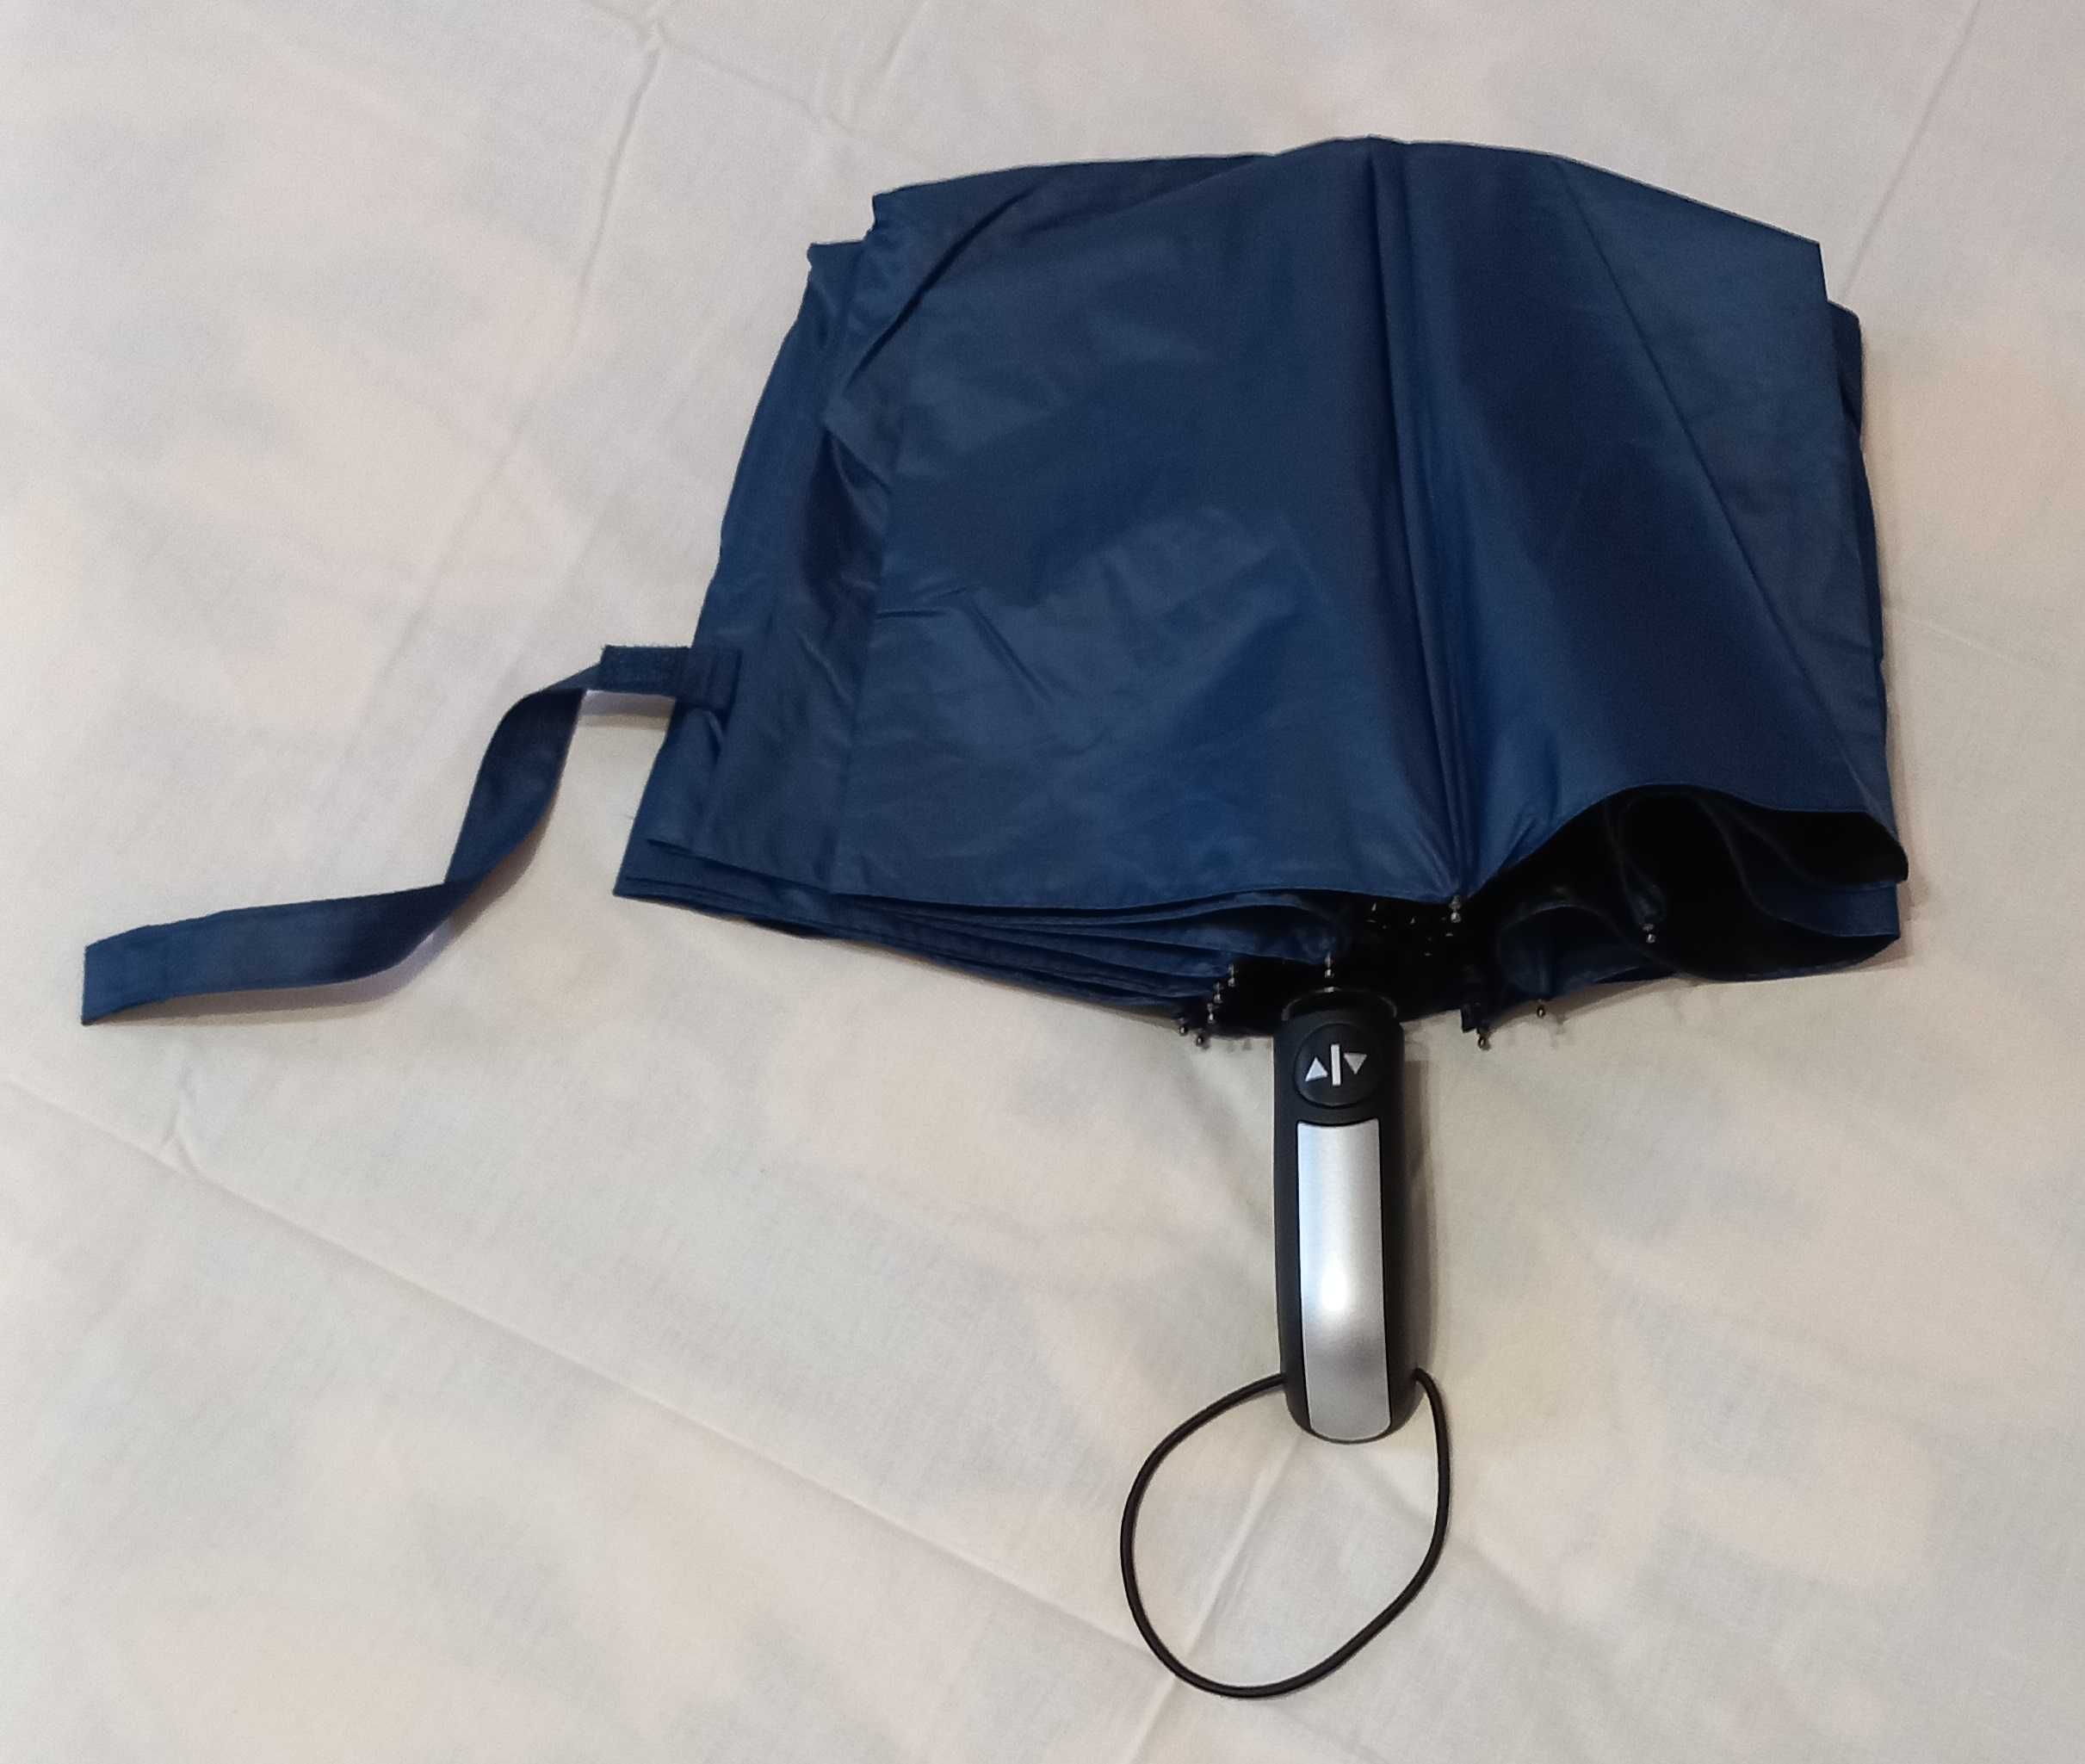 автоматический складной зонт (10 спиц), защита от дождя и от солнца